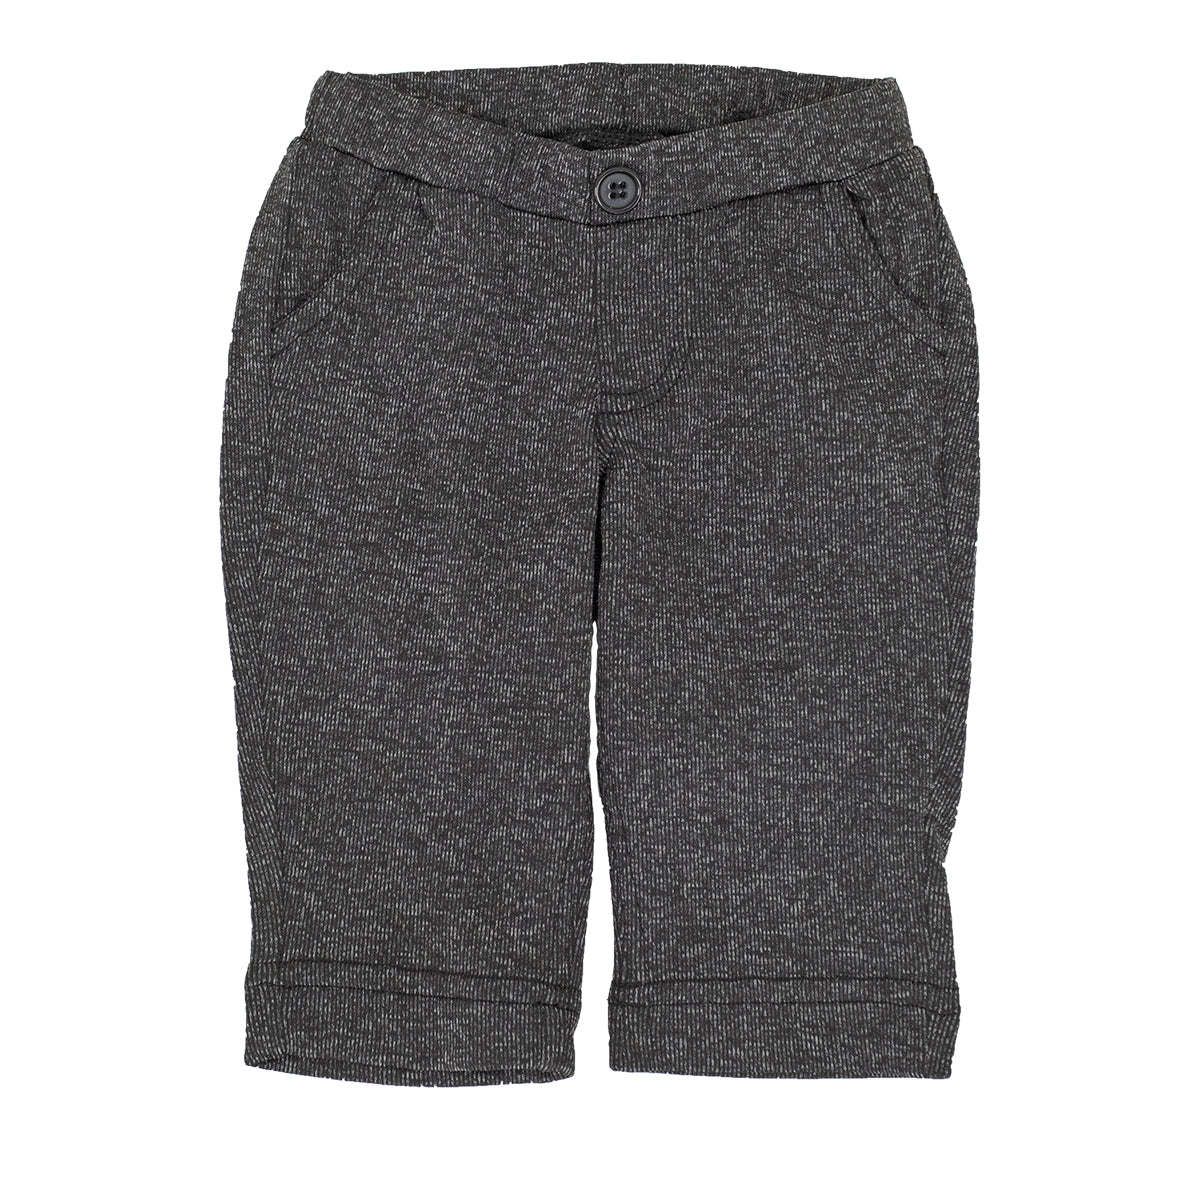 Adurable Infant Knit Dress Pants A2100 – Good's Store Online